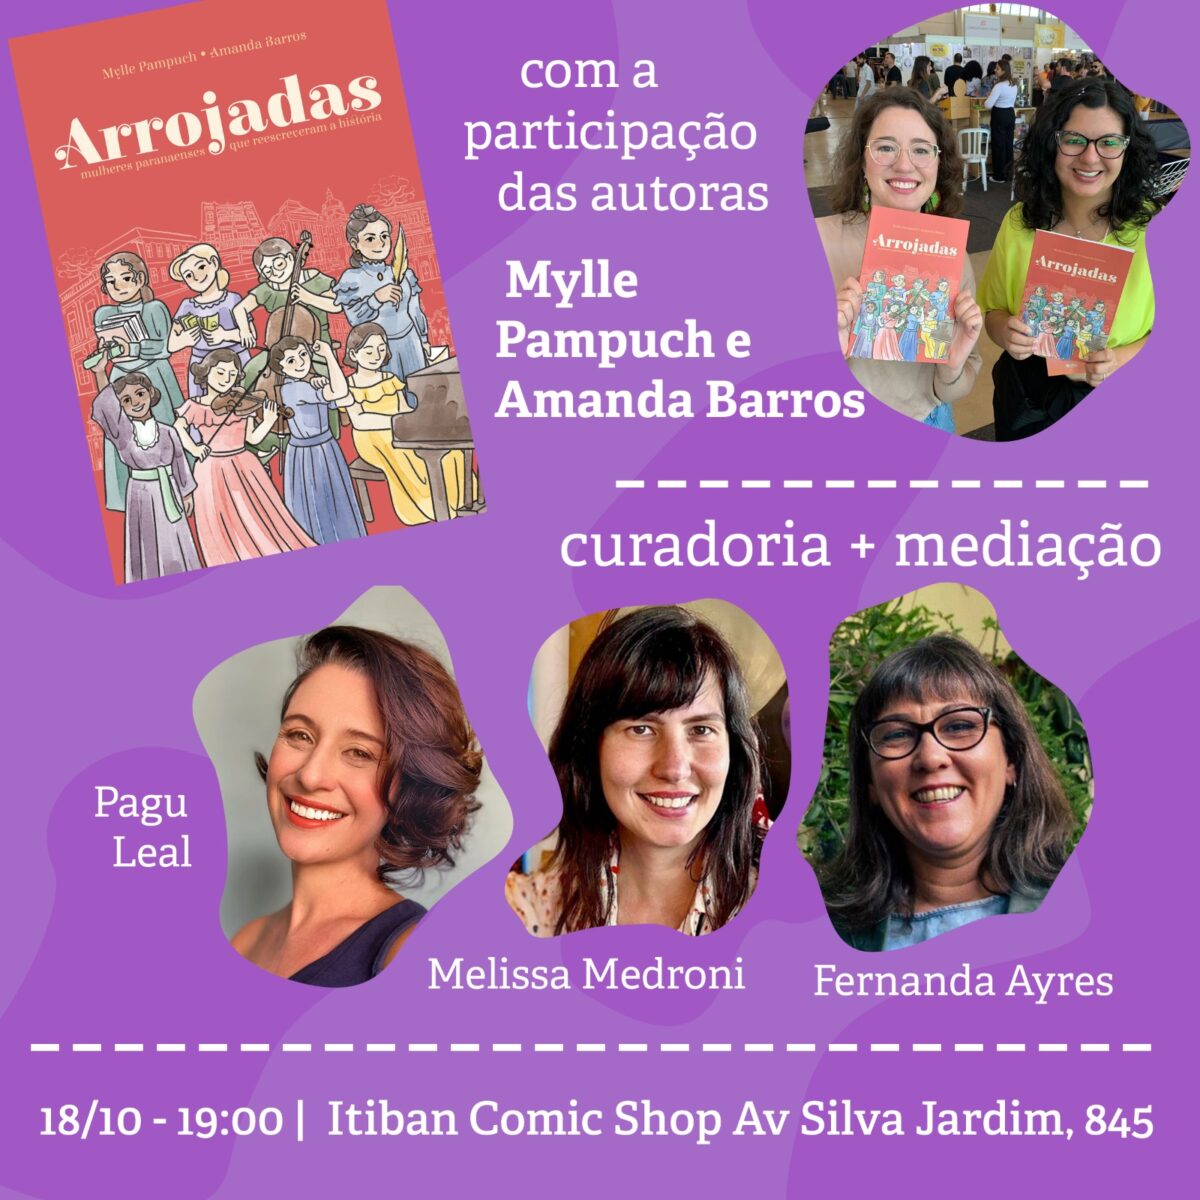 Arrojadas é a HQ escolhida para roda de conversa feminina na Itiban Comic Shop